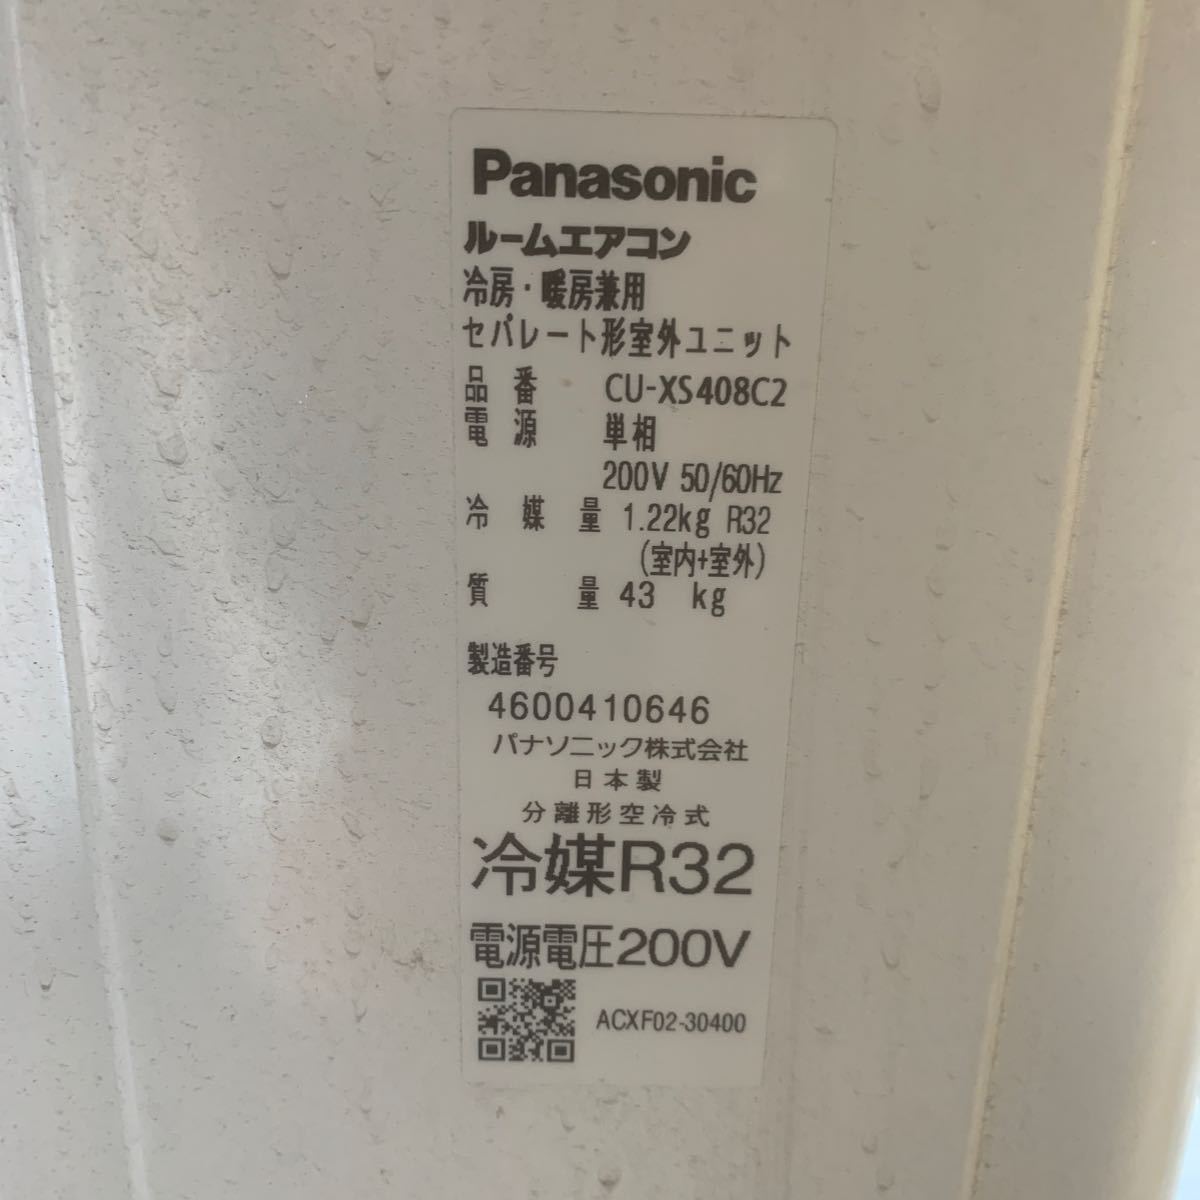 12-137 Panasonic パナソニック ルームエアコン Eolia エオリア CS-XS408C2-W 主に14畳 2018年製_画像8